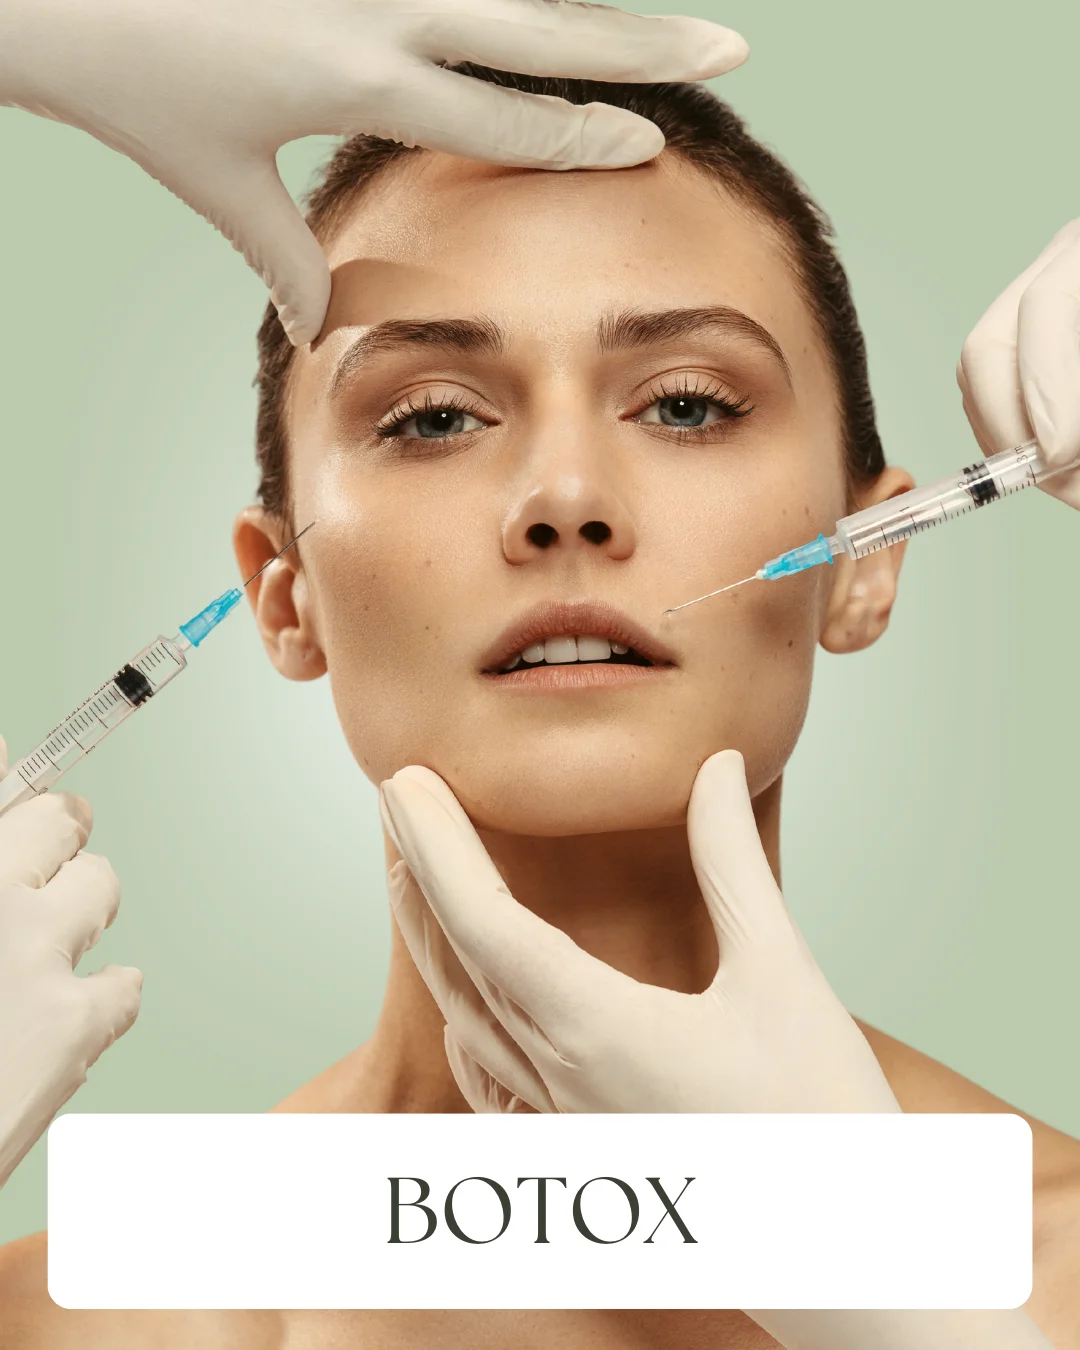 4. Botox